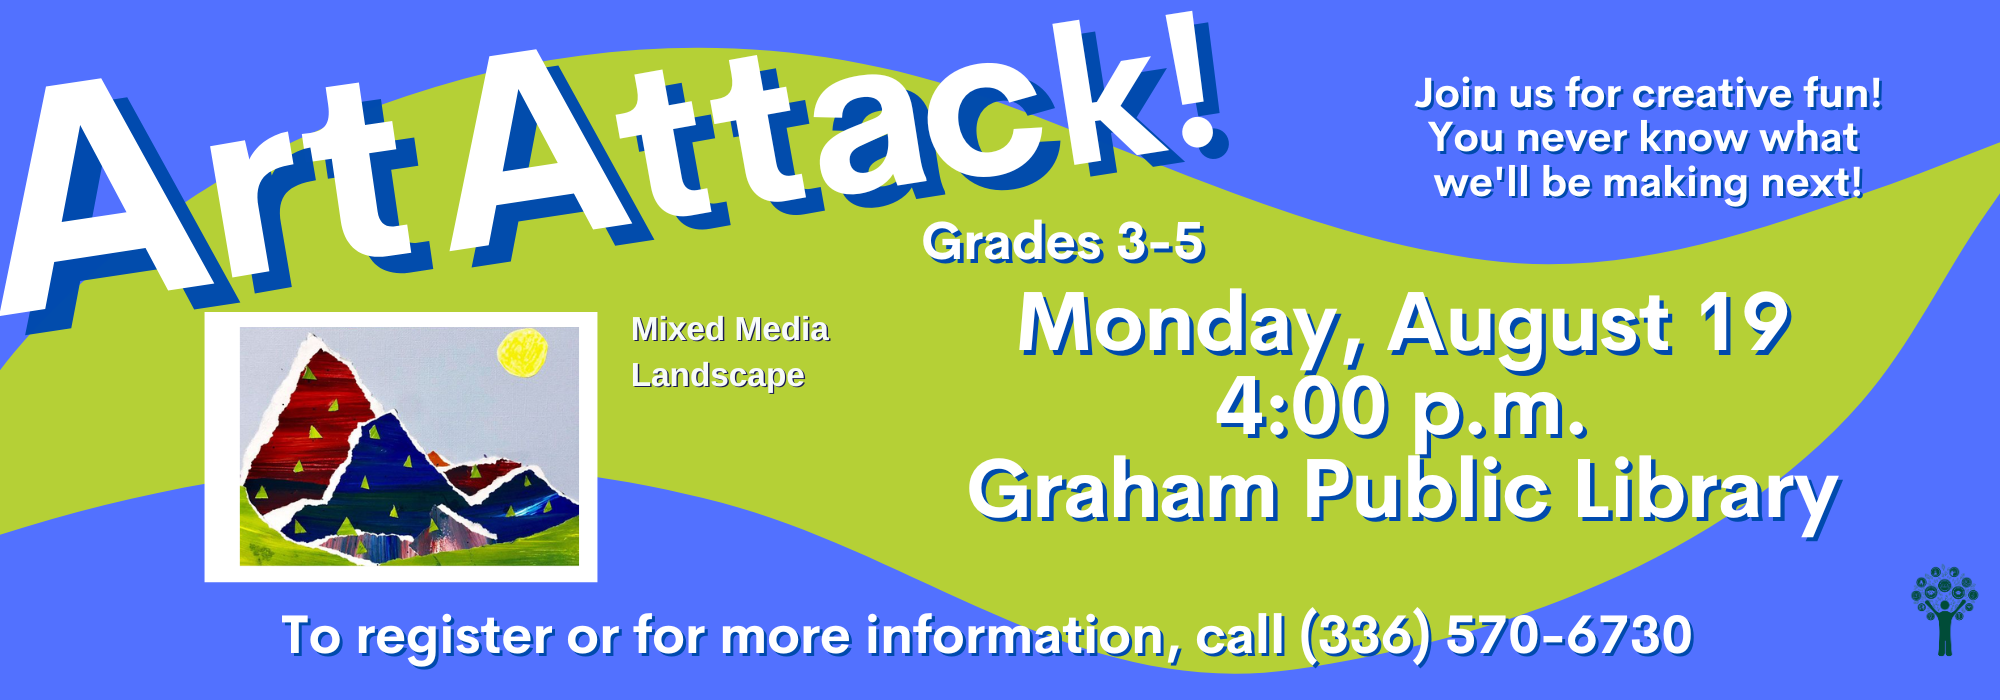 8.19 at 4 pm - Art Attack at Graham